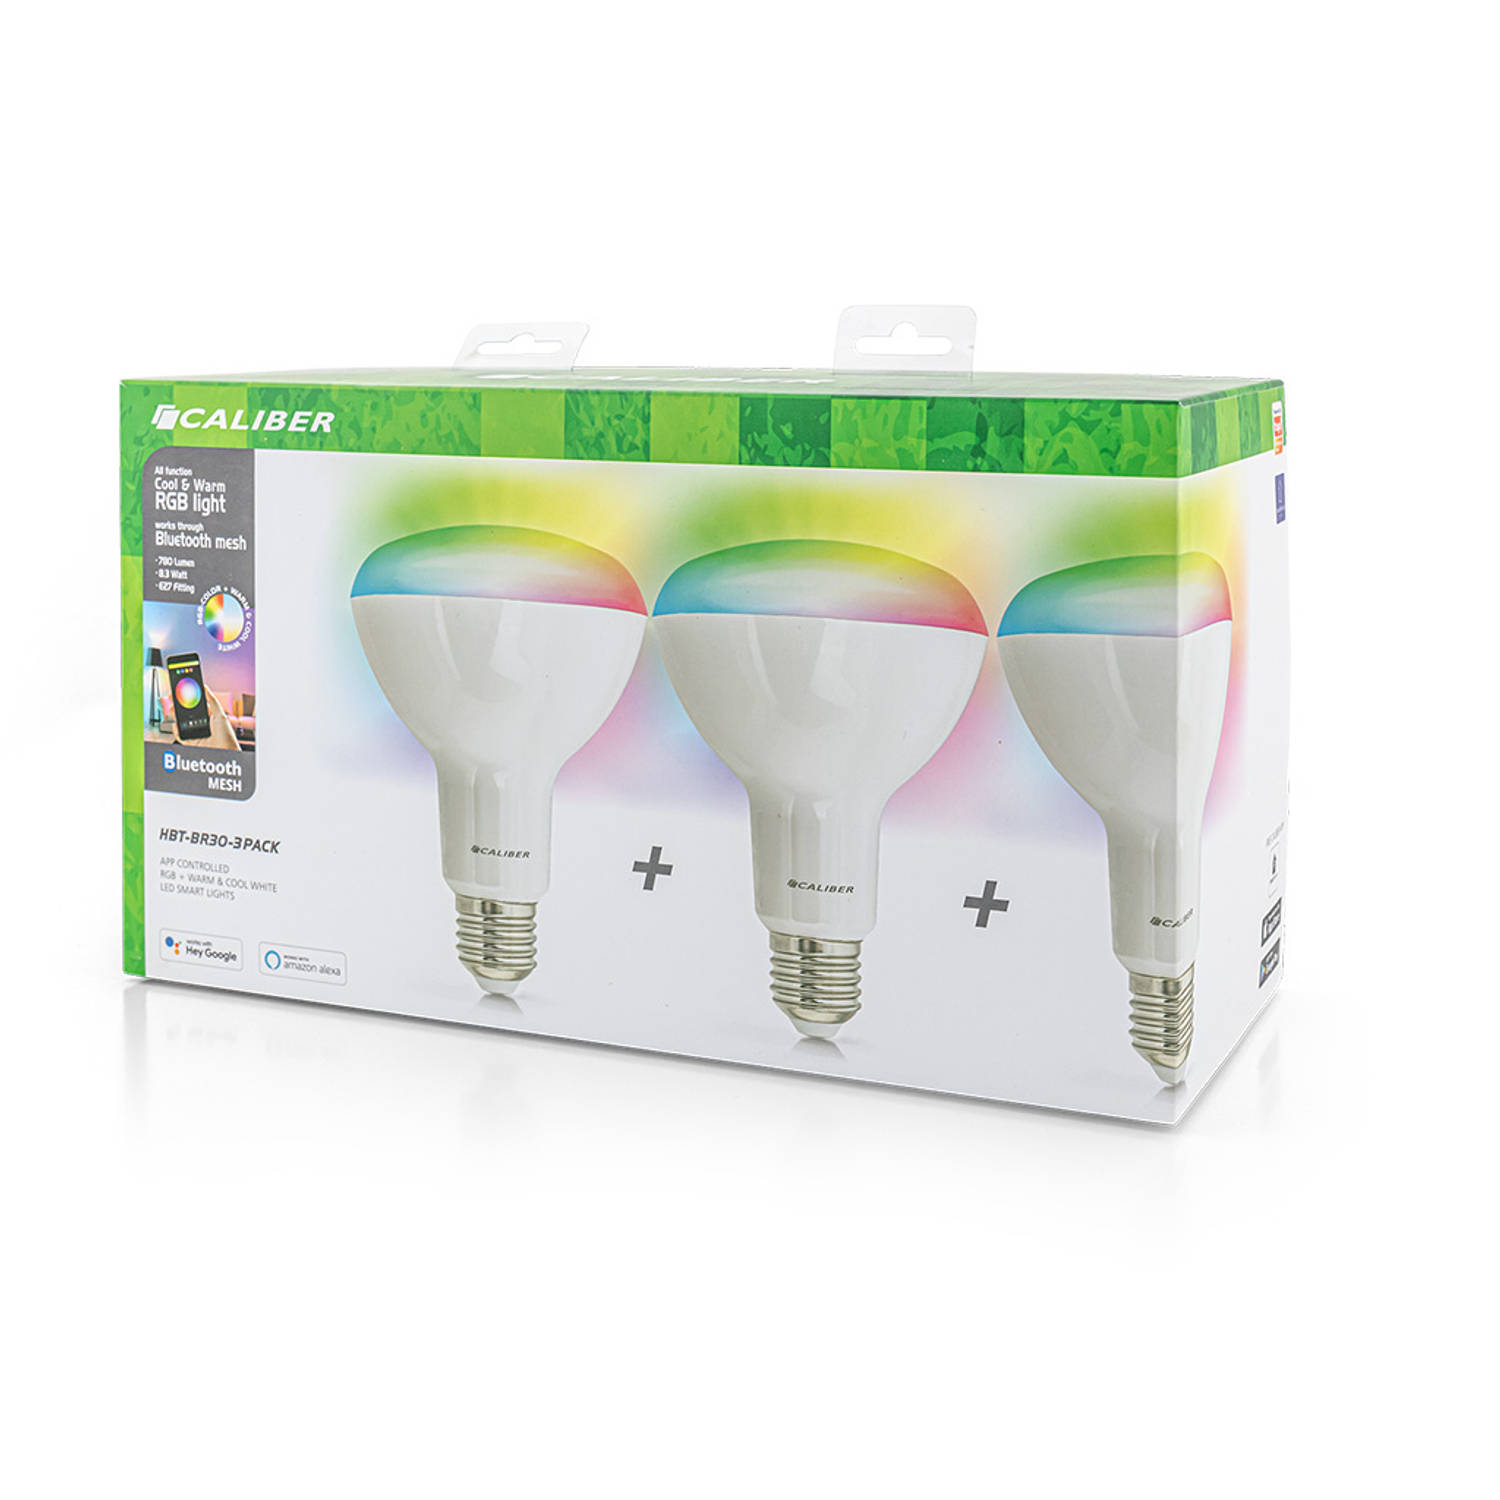 Caliber E27 3 pack Dimbare Smart Lamp met RGB Leds - Slimme E27 Led Lamp - 850 Lumen - 8 Watt - Handige App